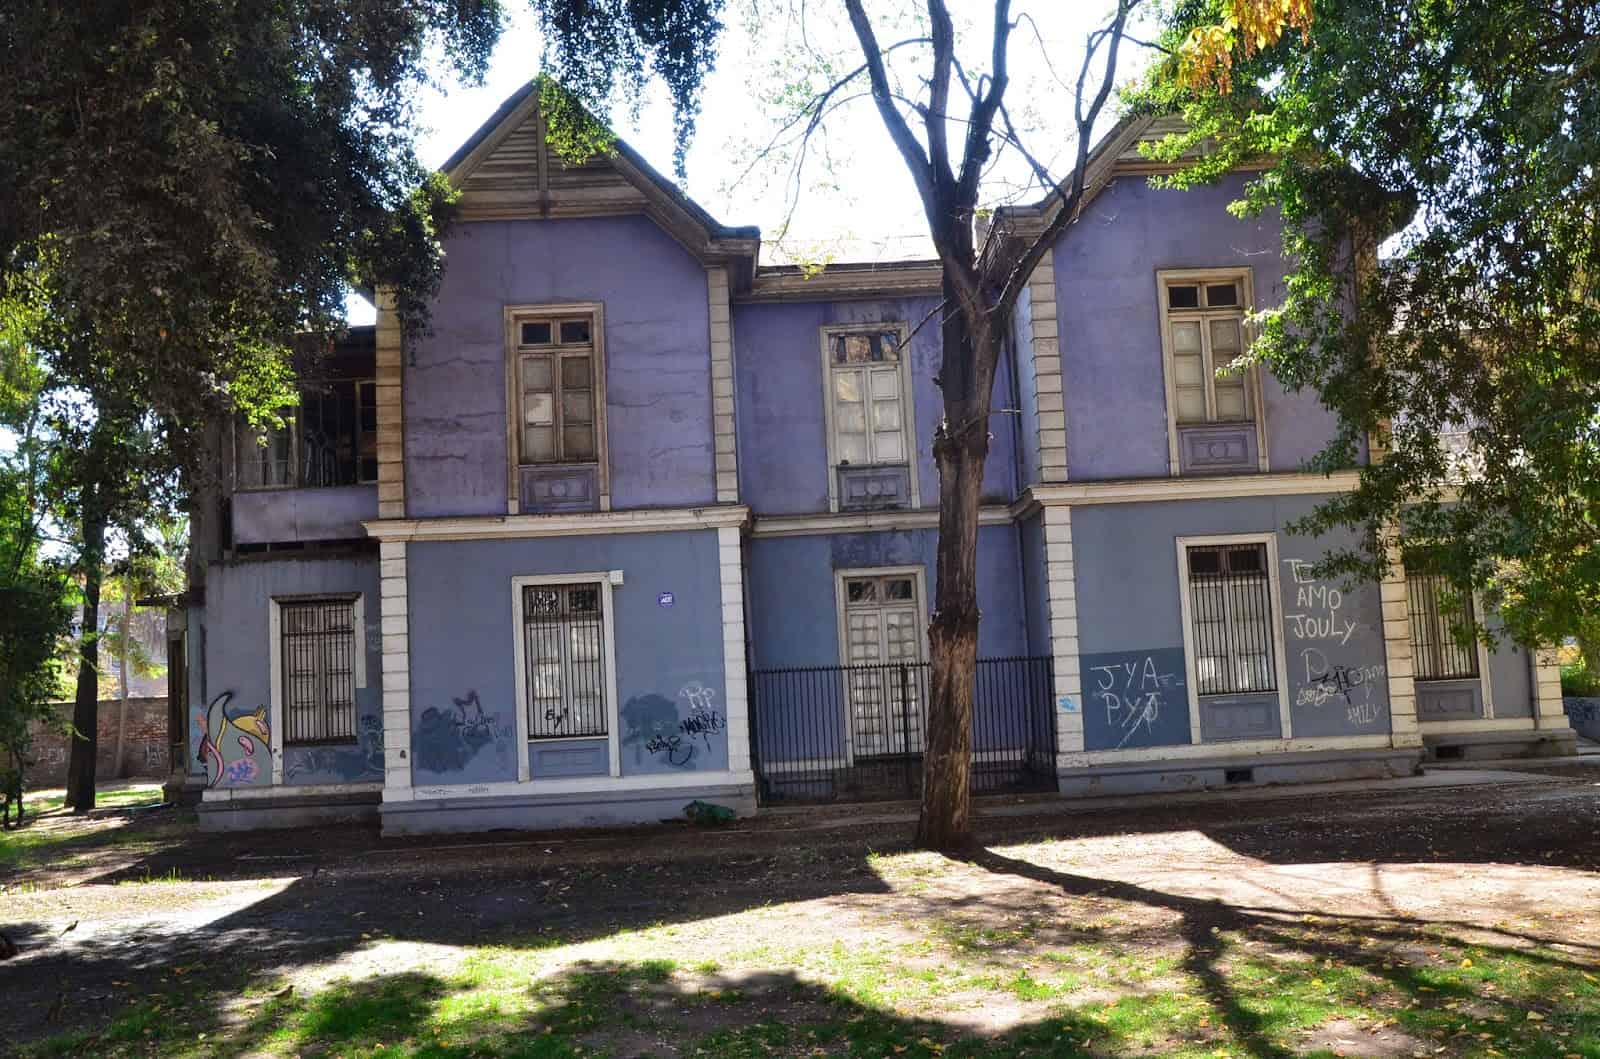 Casa Obrecht at Parque Quinta Normal in Santiago de Chile